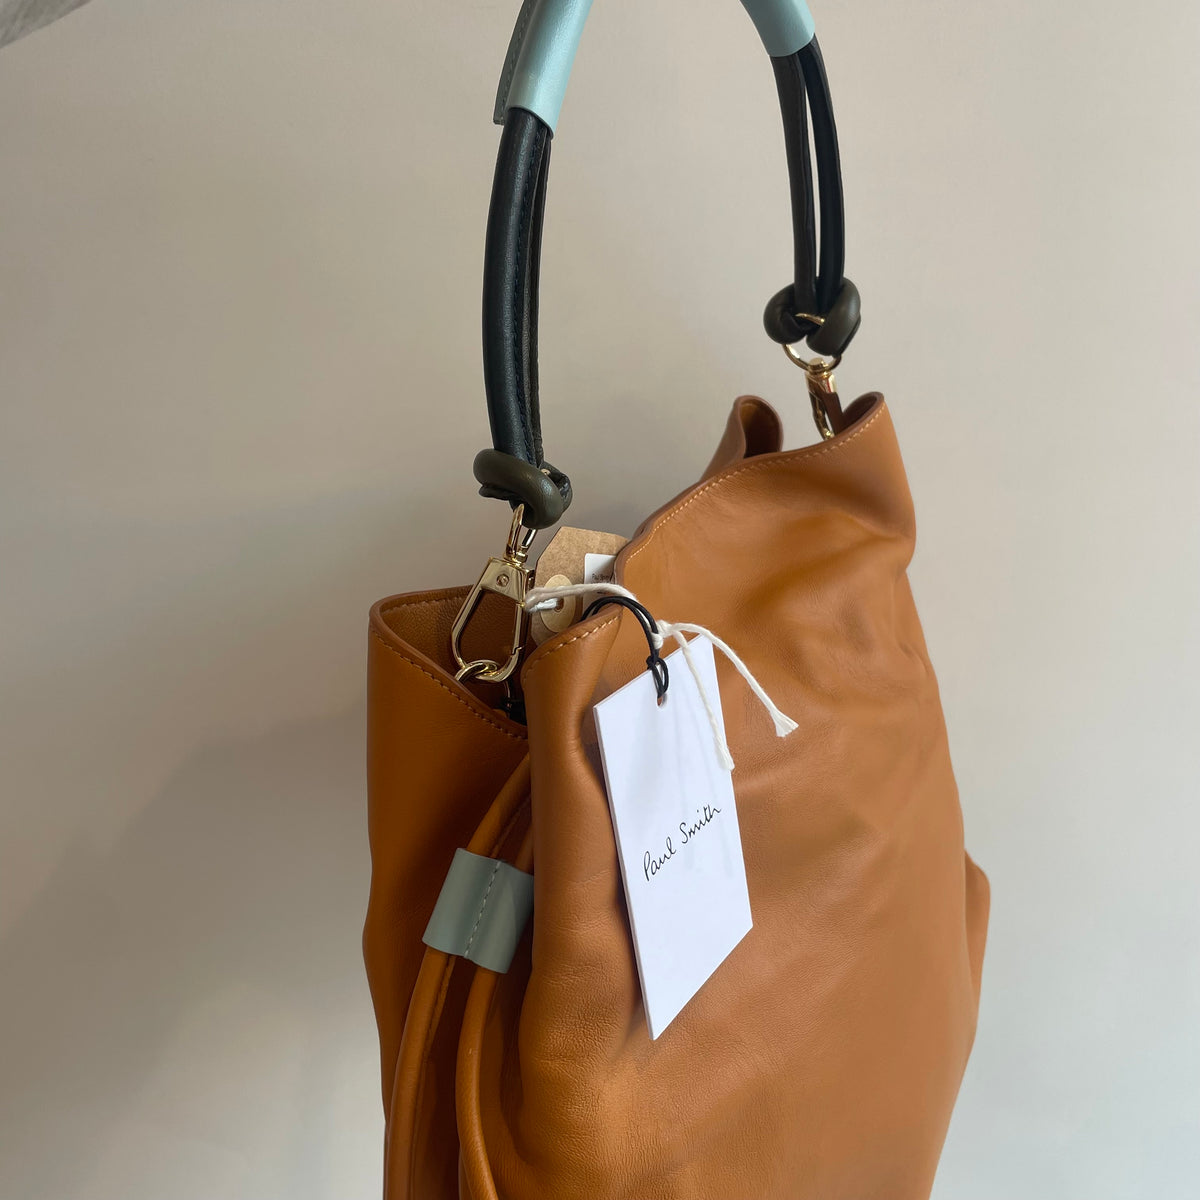 Paul Smith leather bucket bag Tan/Blue OS